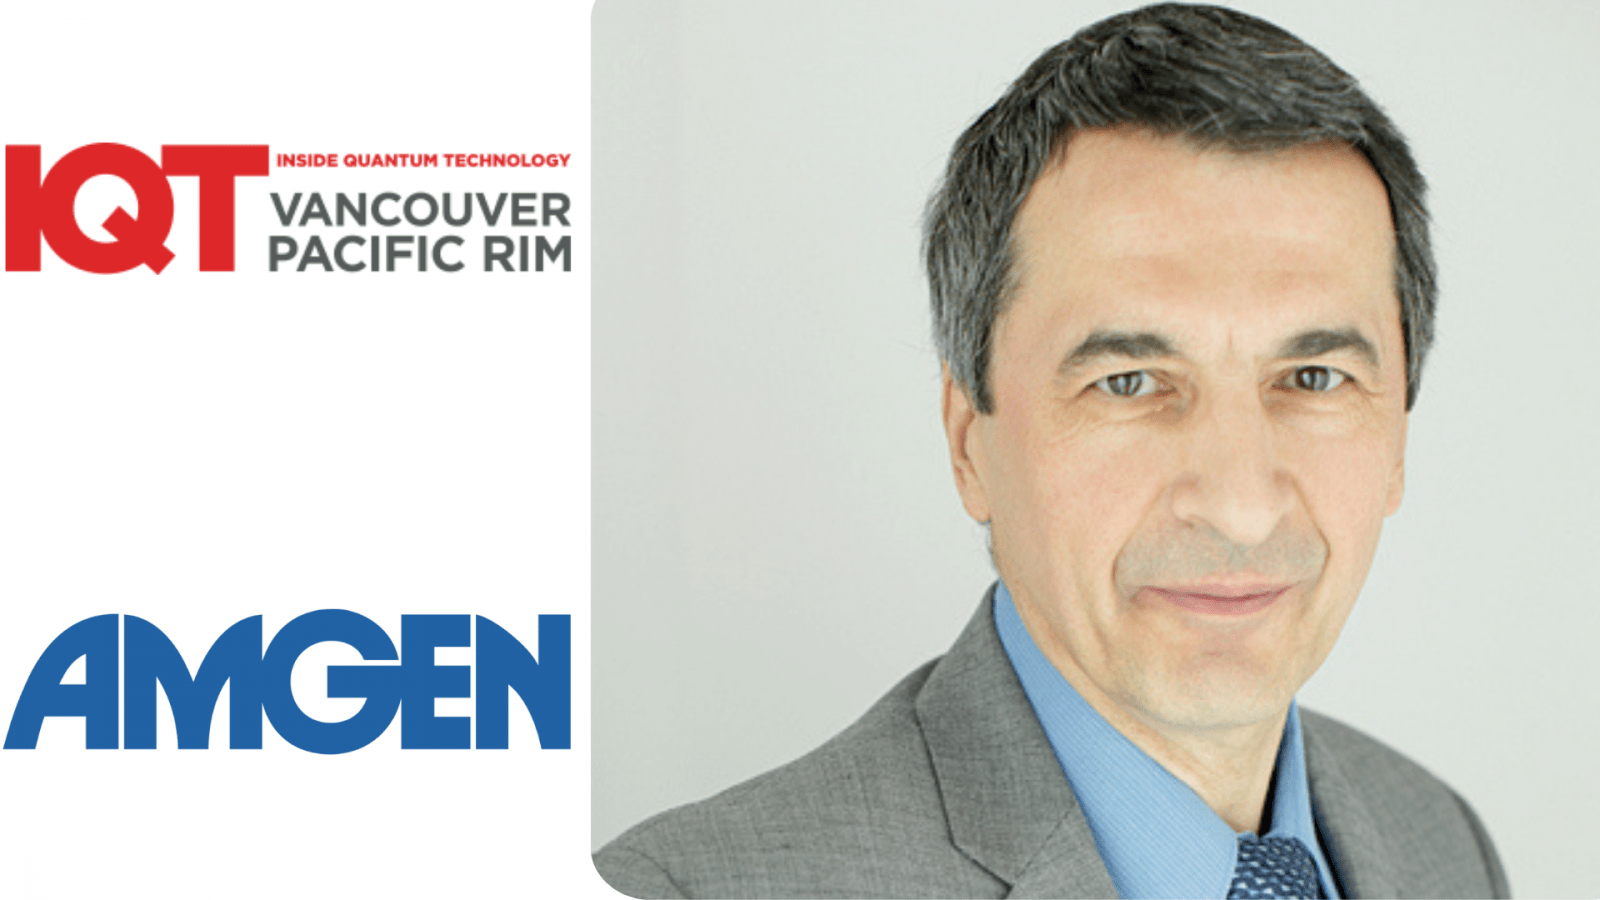 Zoran Krunic, Giám đốc cấp cao về Khoa học dữ liệu tại Amgen là diễn giả IQT Vancouver/Pacific Rim năm 2024